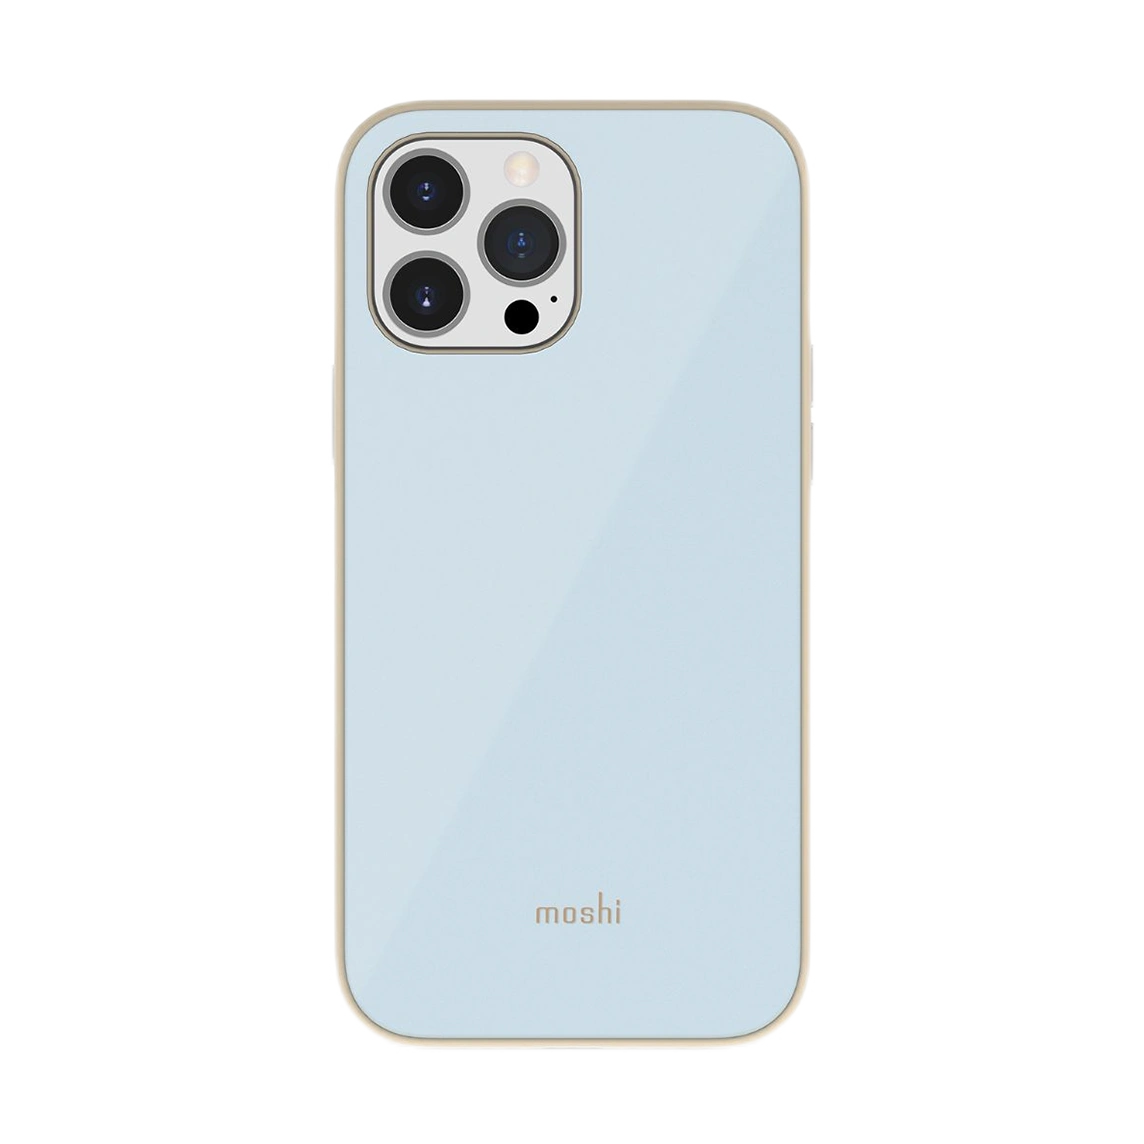 moshi-iglaze-slim-hardshell-case-for-iphone-13-pro-max